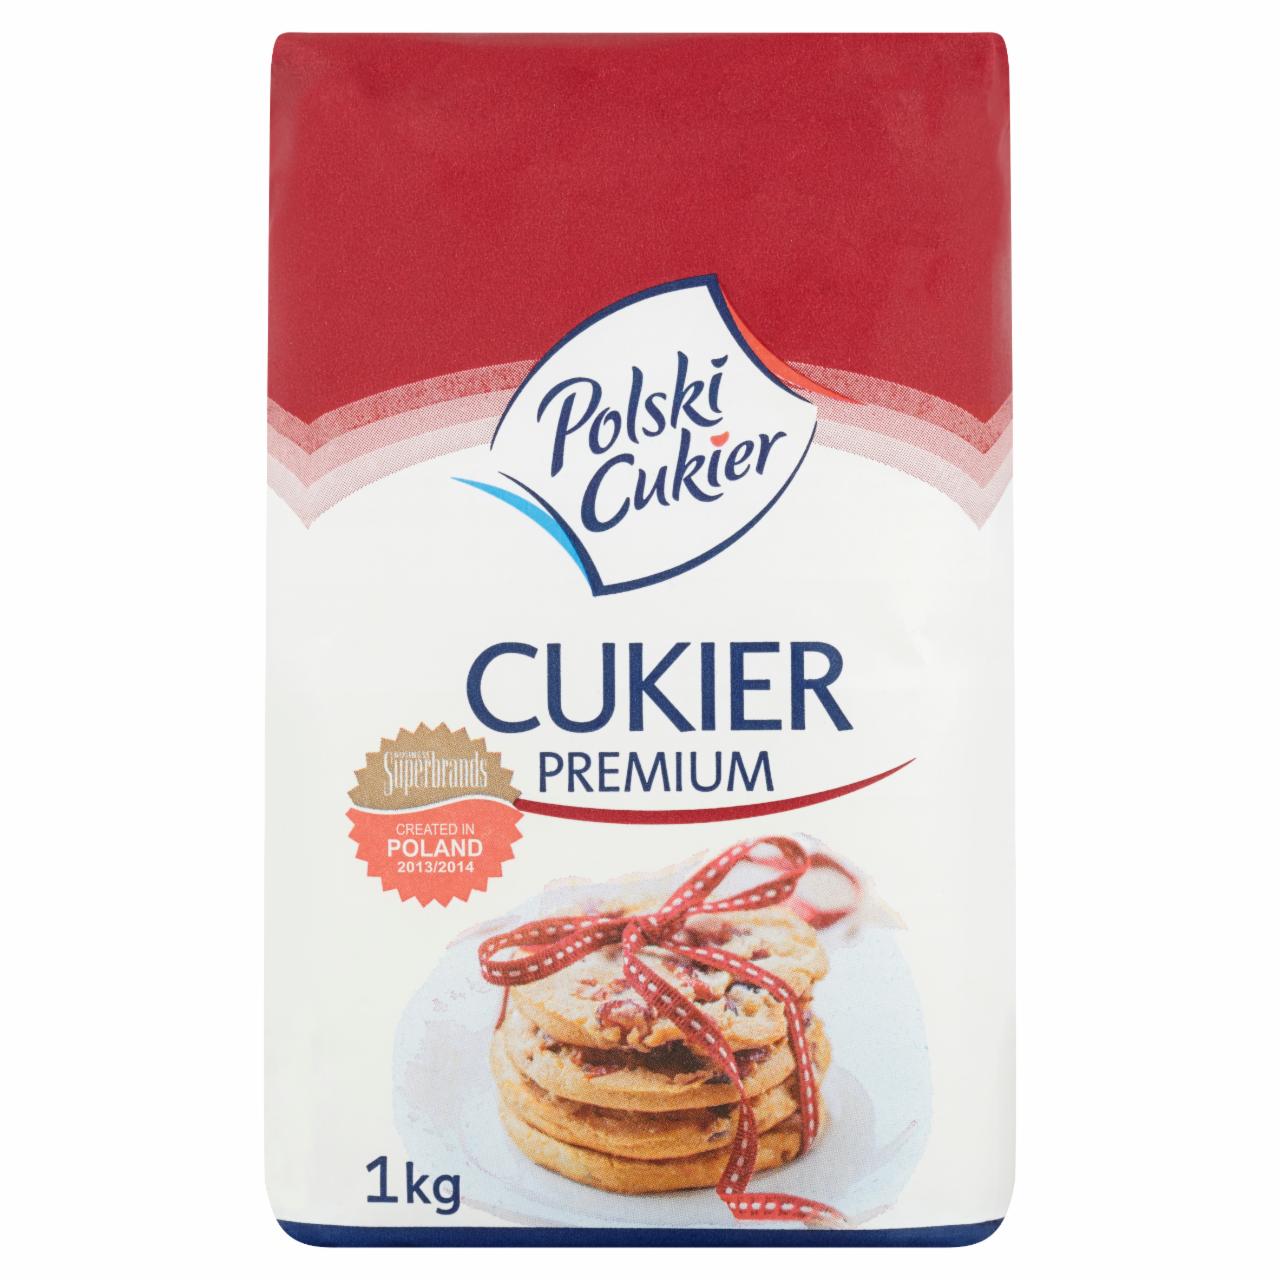 Zdjęcia - Polski Cukier Cukier Premium 1 kg